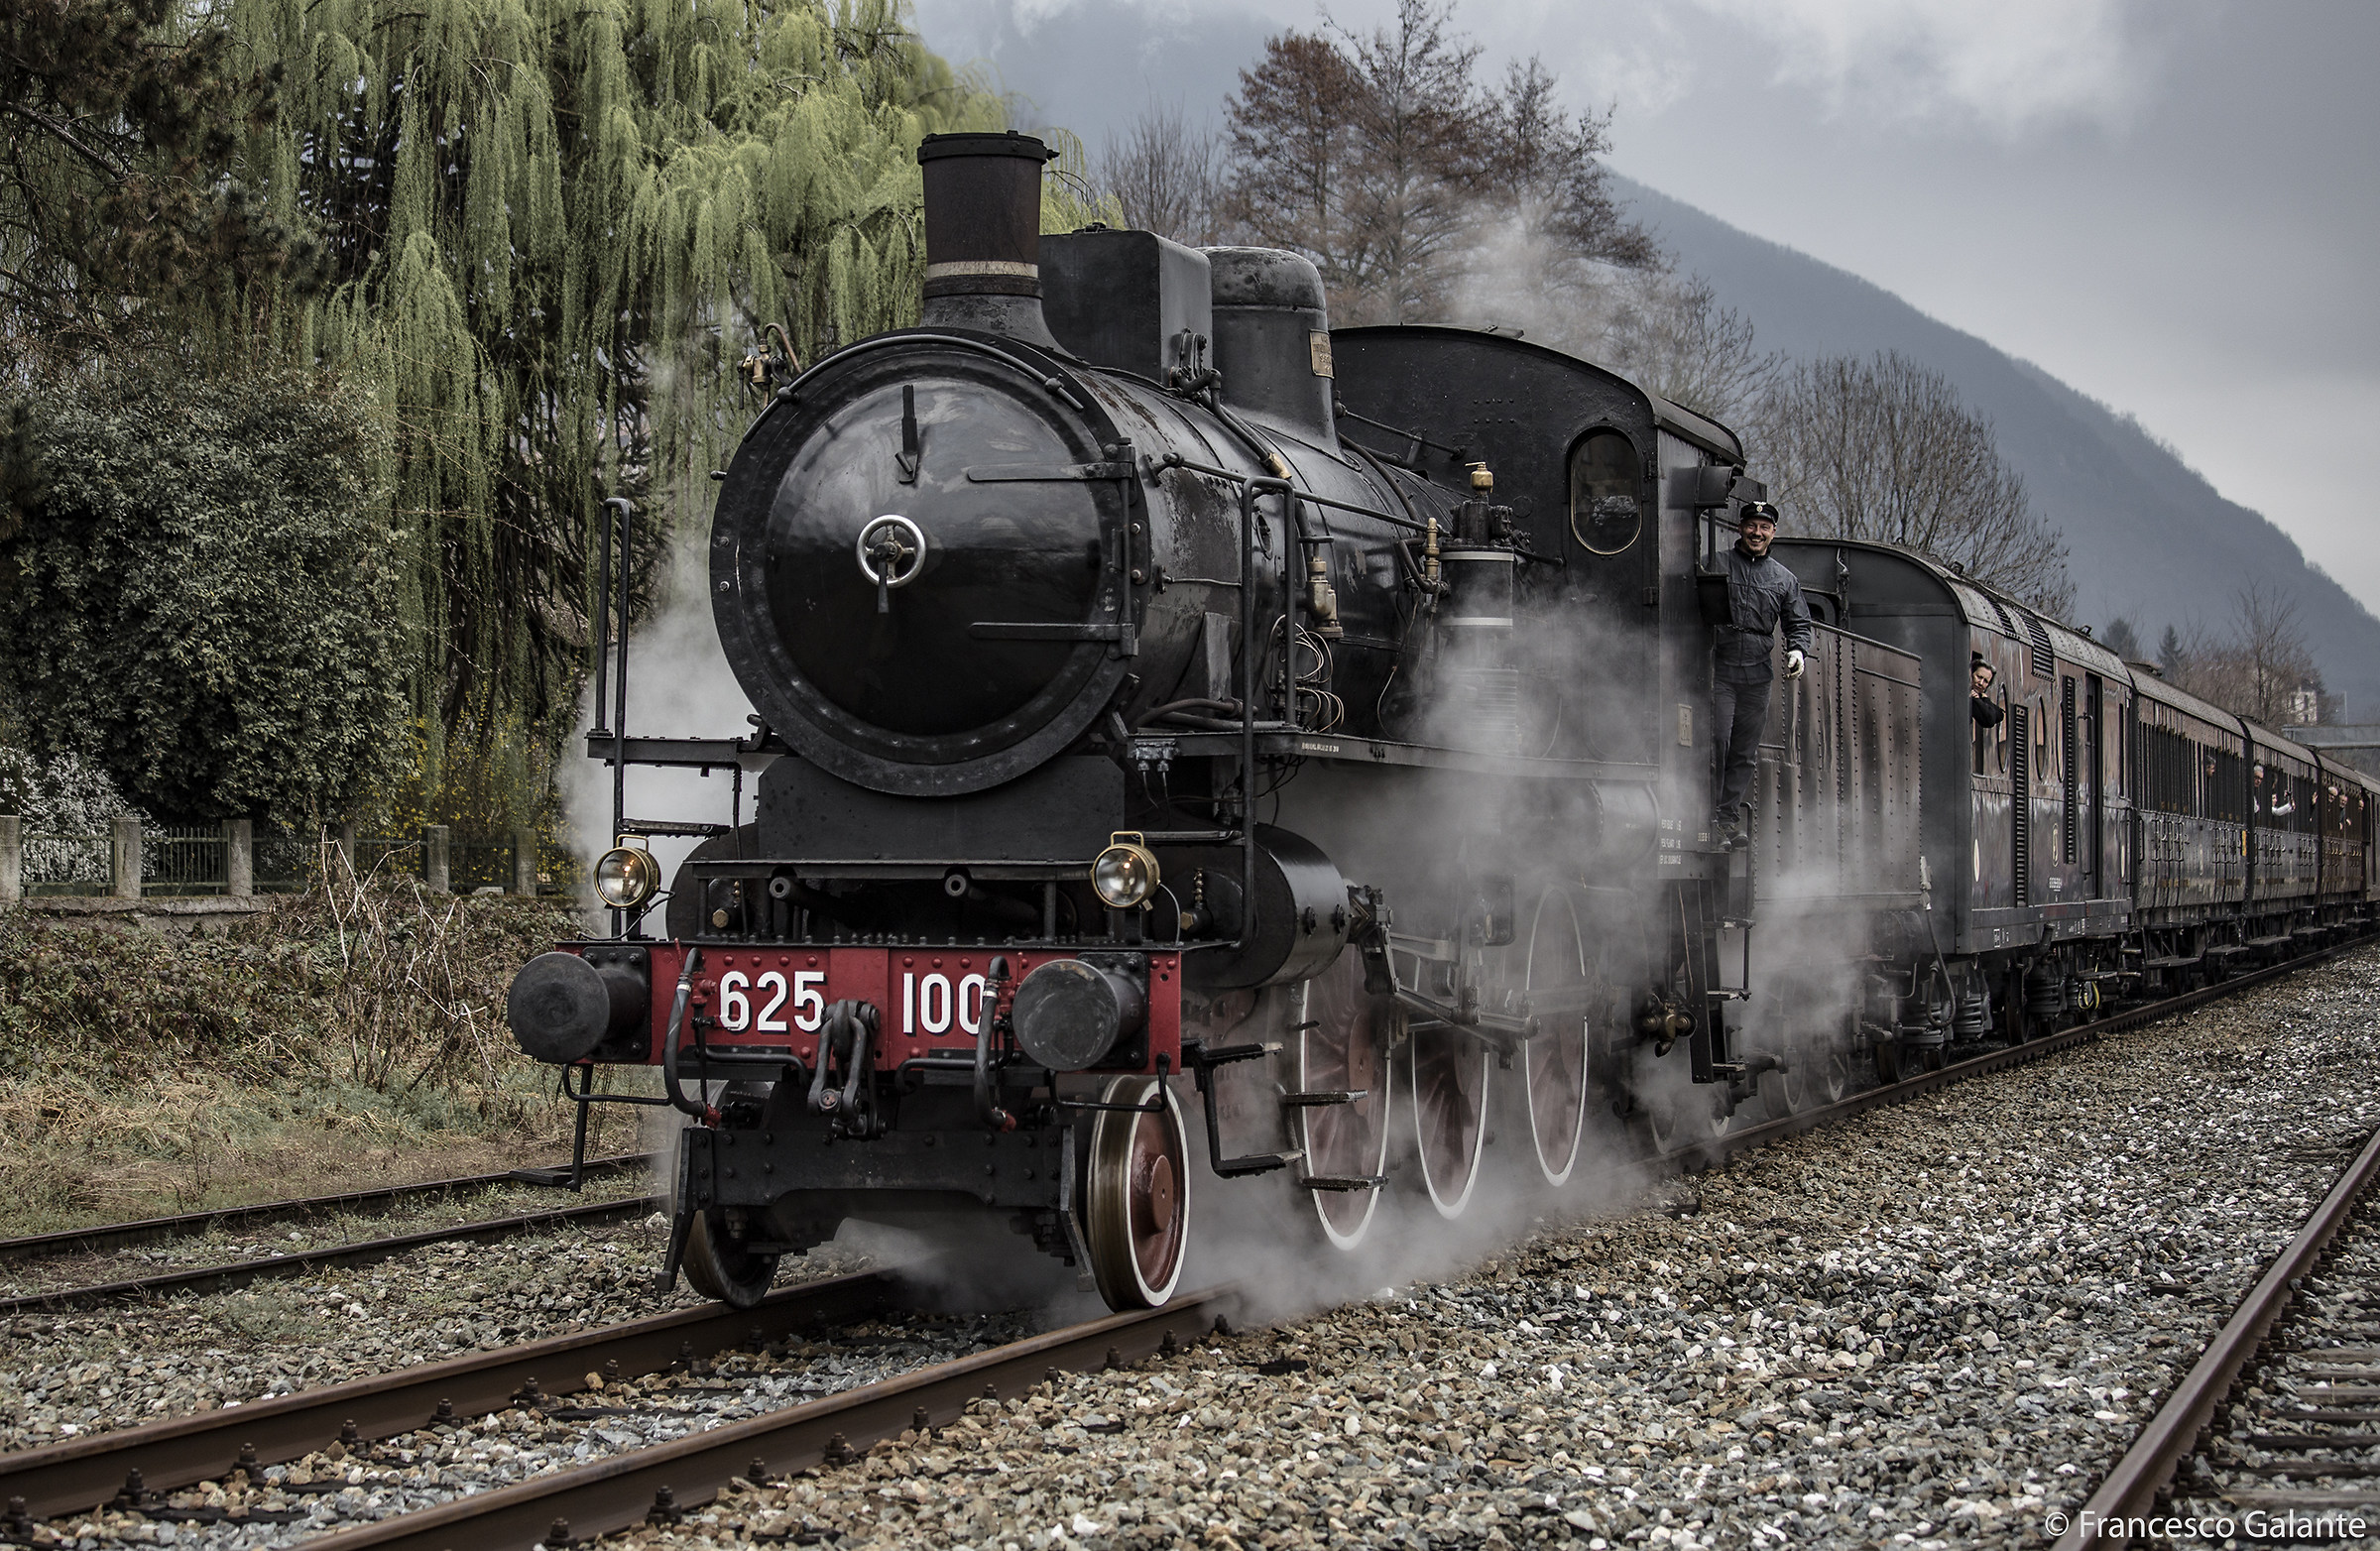 Historic train in Valsesia ......